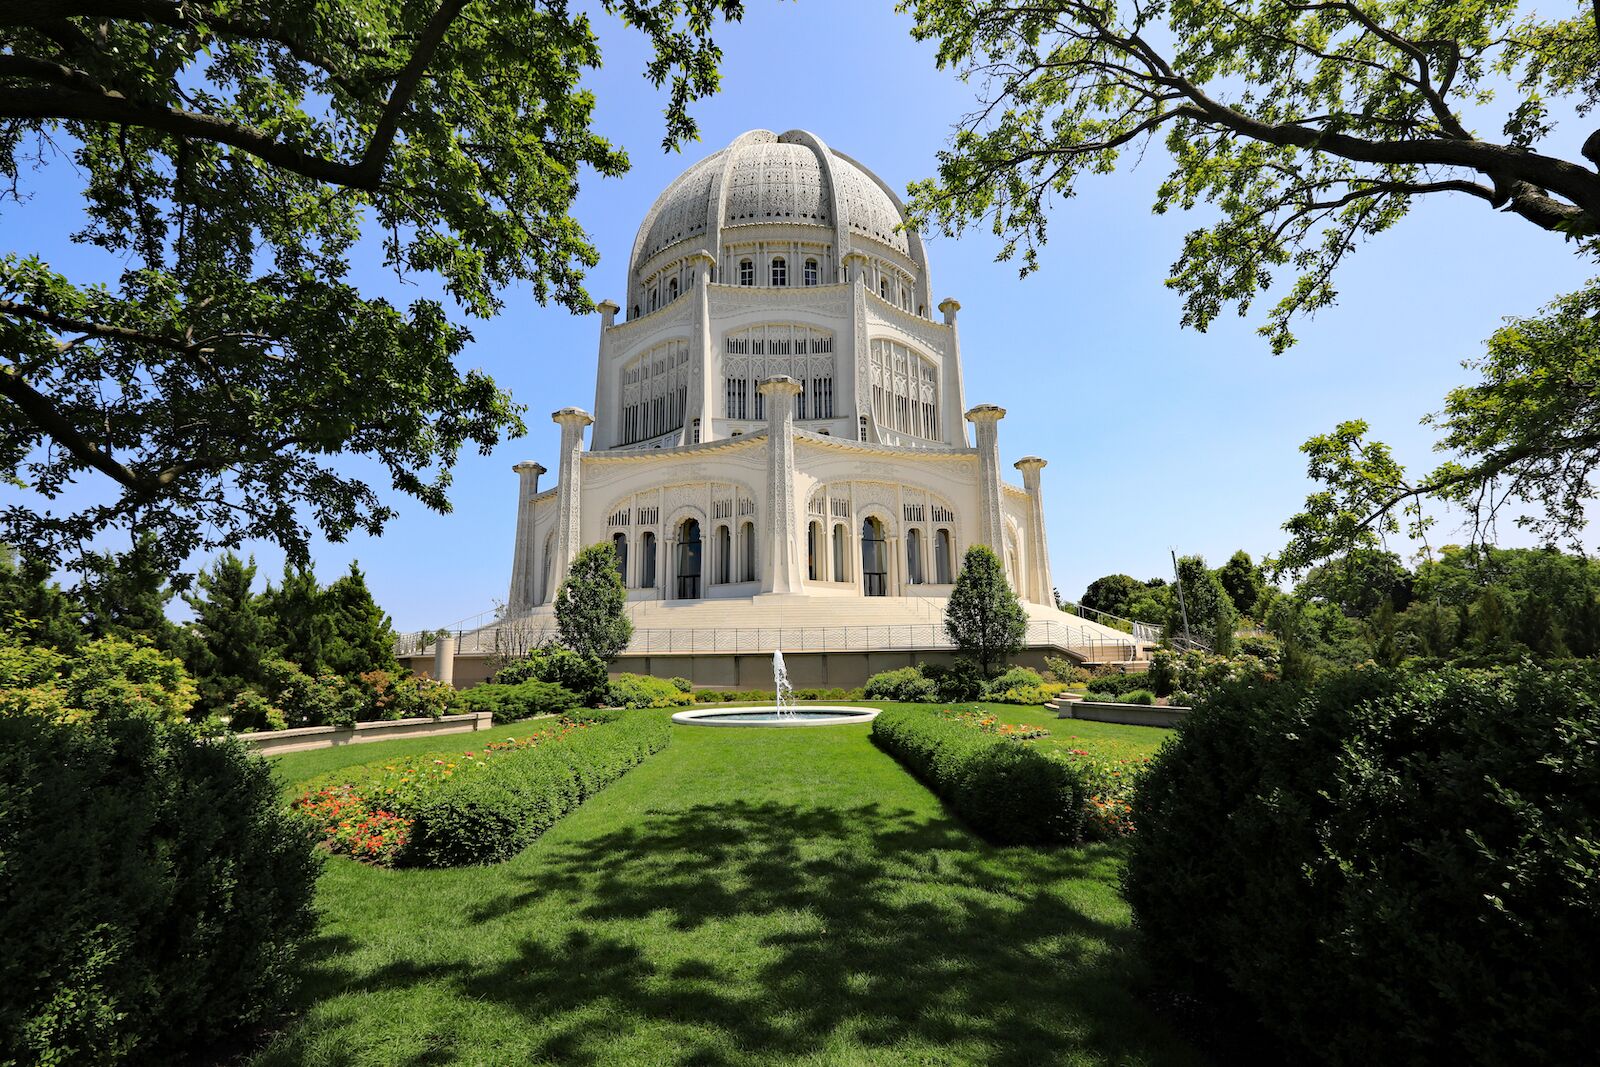 The Bahá'í House of Worship around Chicago